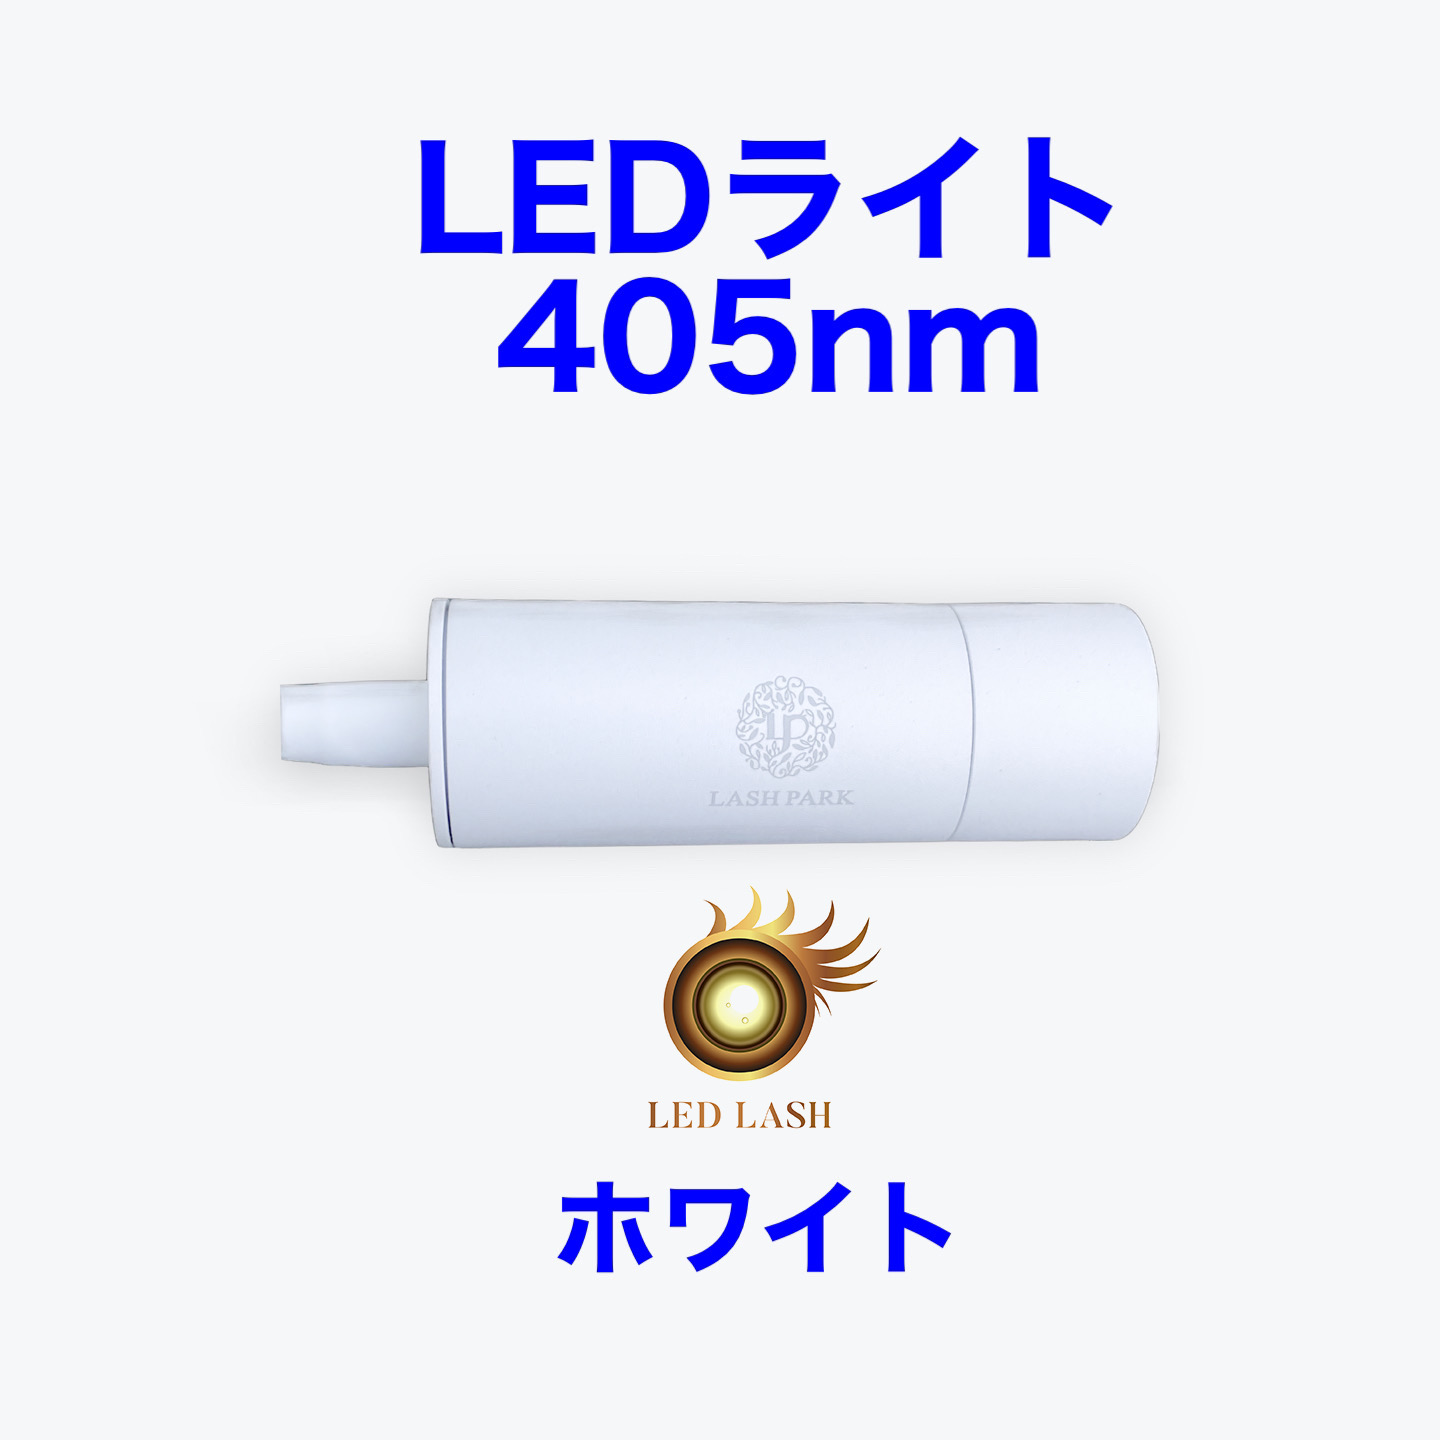 LEDまつ毛エクステ専用ライト405nm ホワイト LED LASH画像